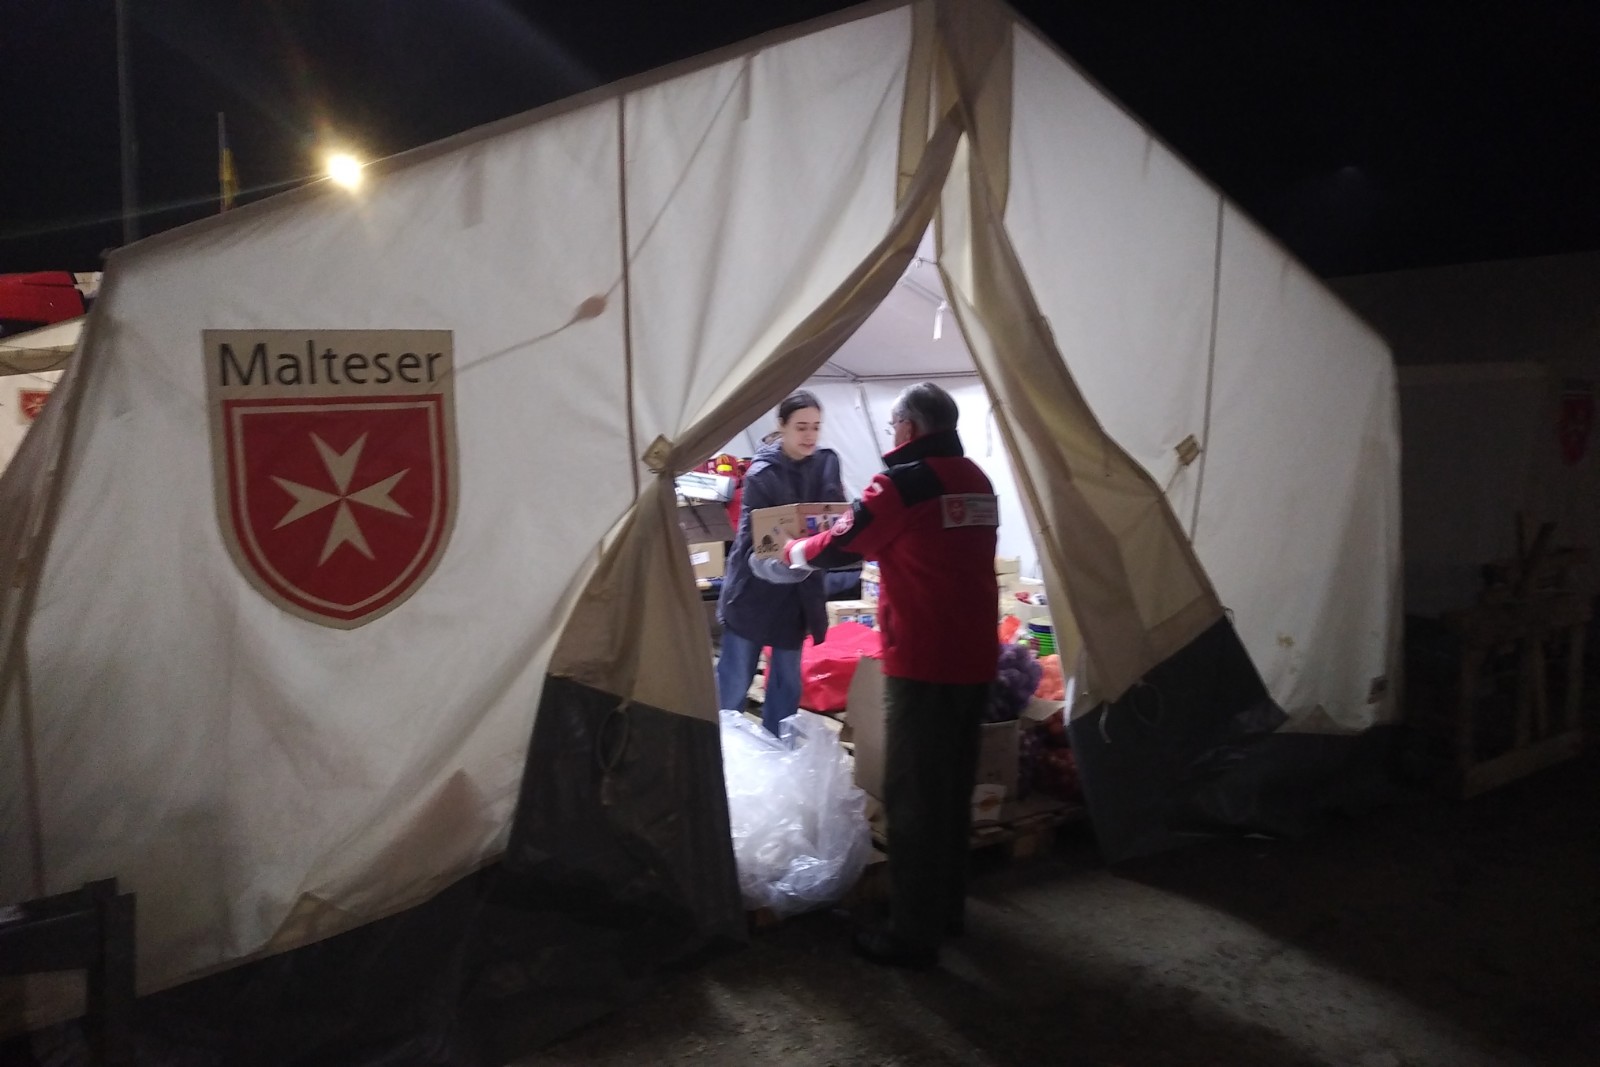 Ukraine-Krieg: Der Malteserorden verstärkt seine Hilfsaktionen in der Region